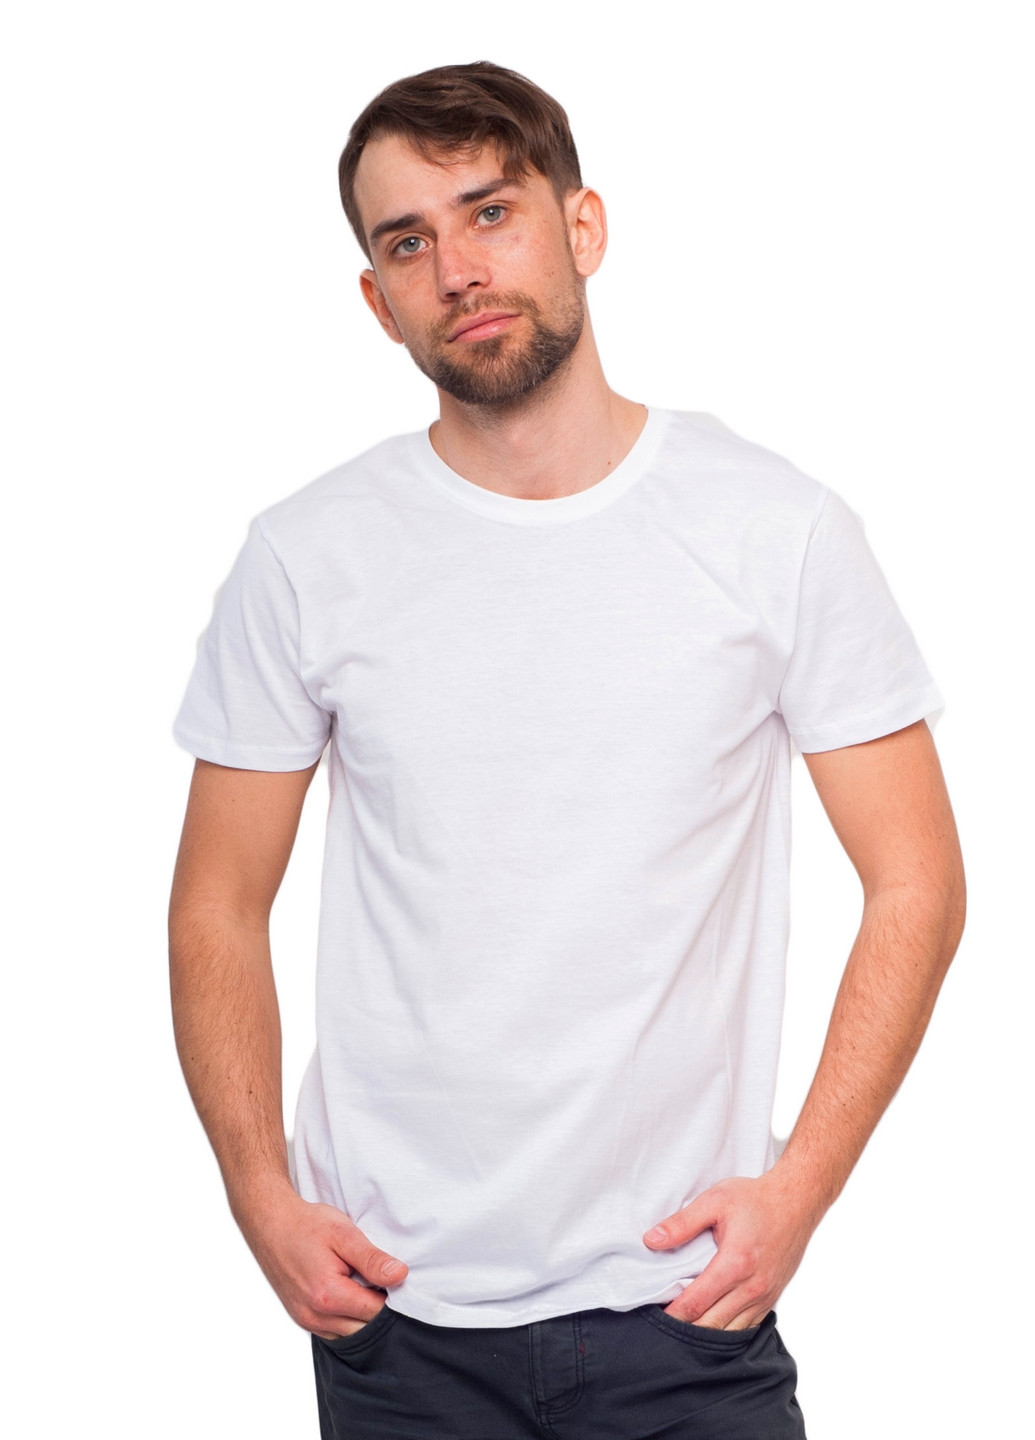 Белая футболка мужская Наталюкс 11-1312